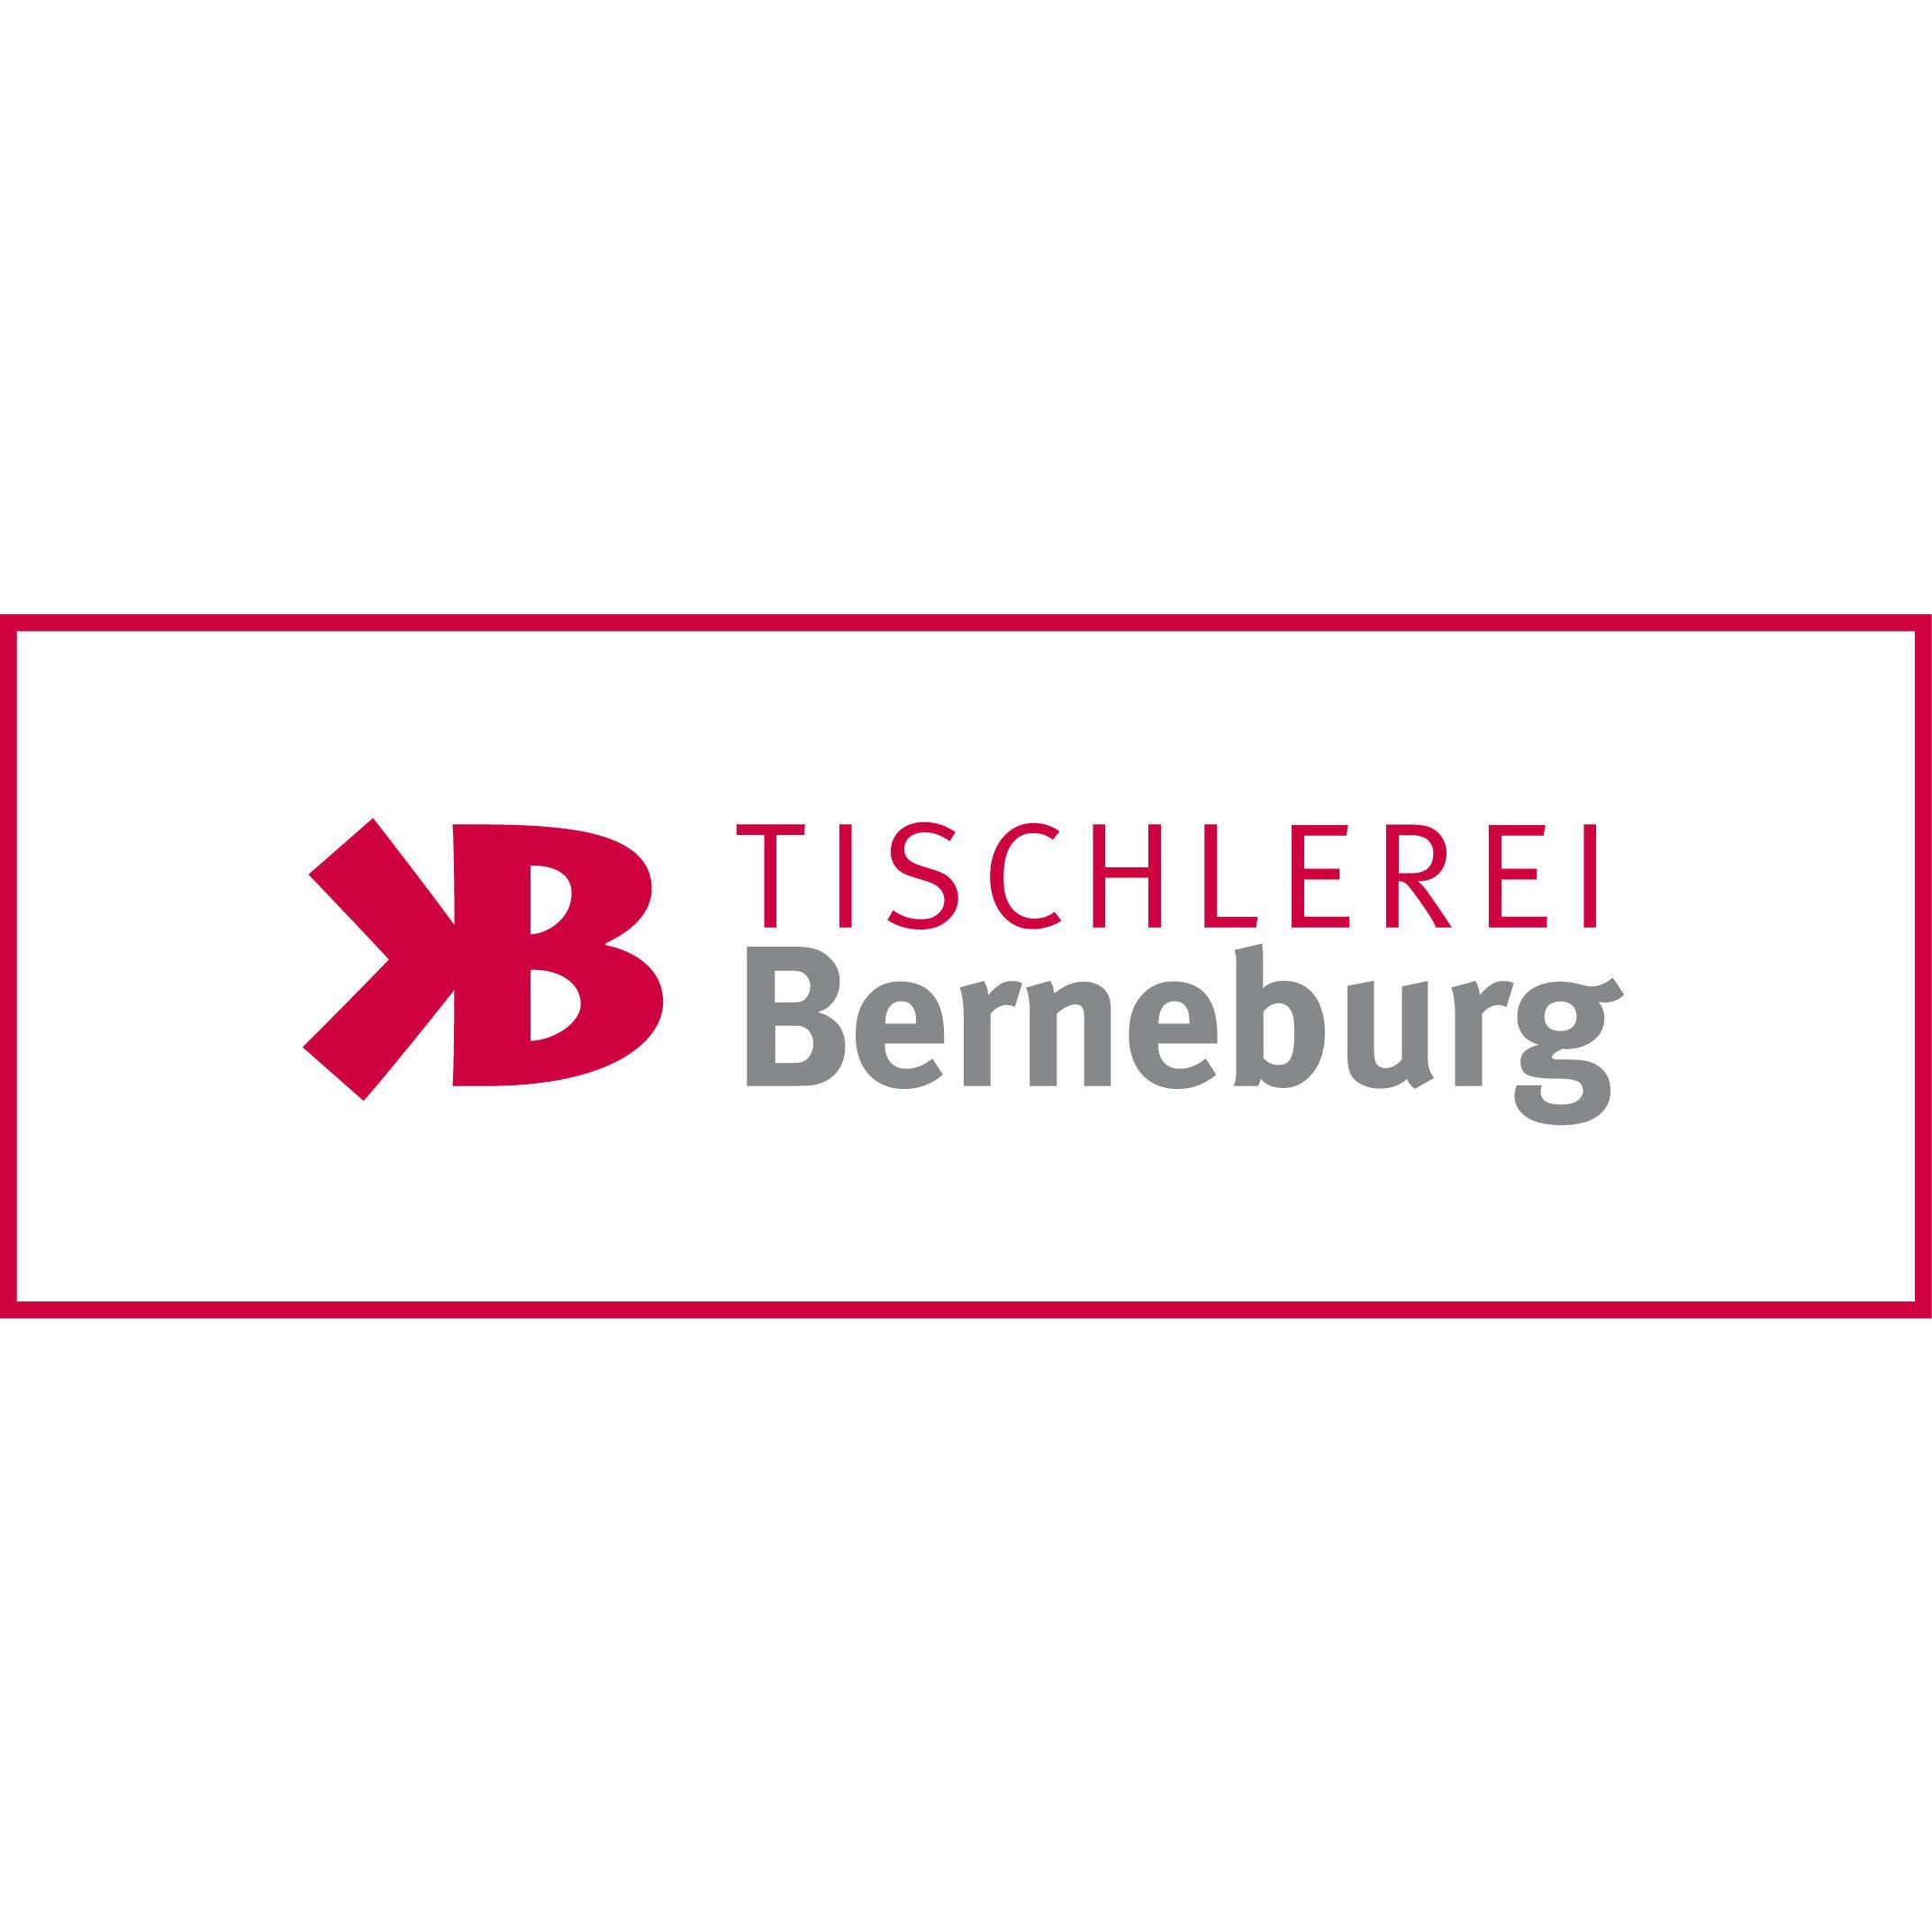 Bau- und Möbeltischlerei Berneburg GmbH & Co. KG in Eschwege - Logo